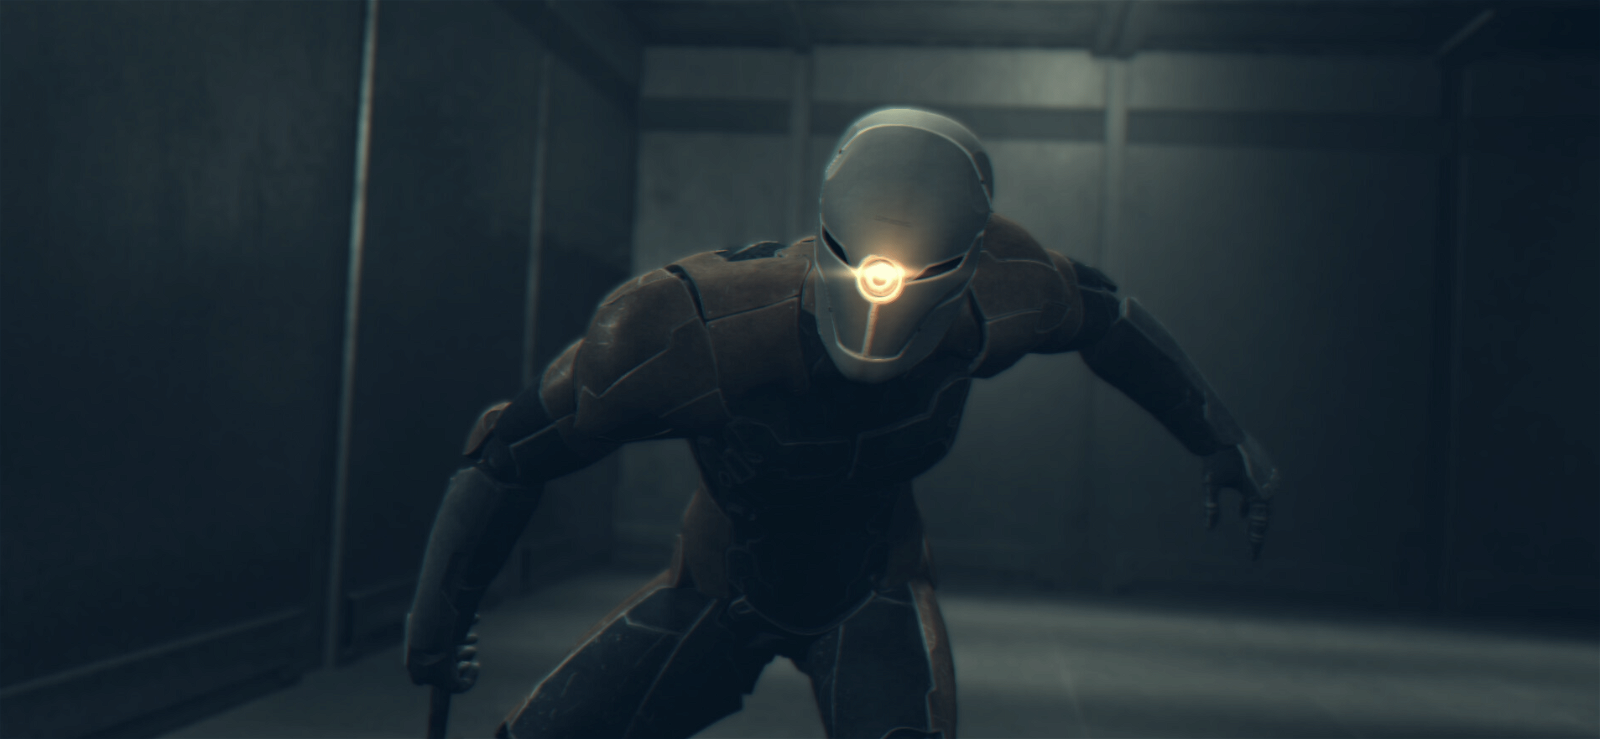 La scena del corridoio con il Ninja di Metal Gear Solid ricreata in Unity Engine